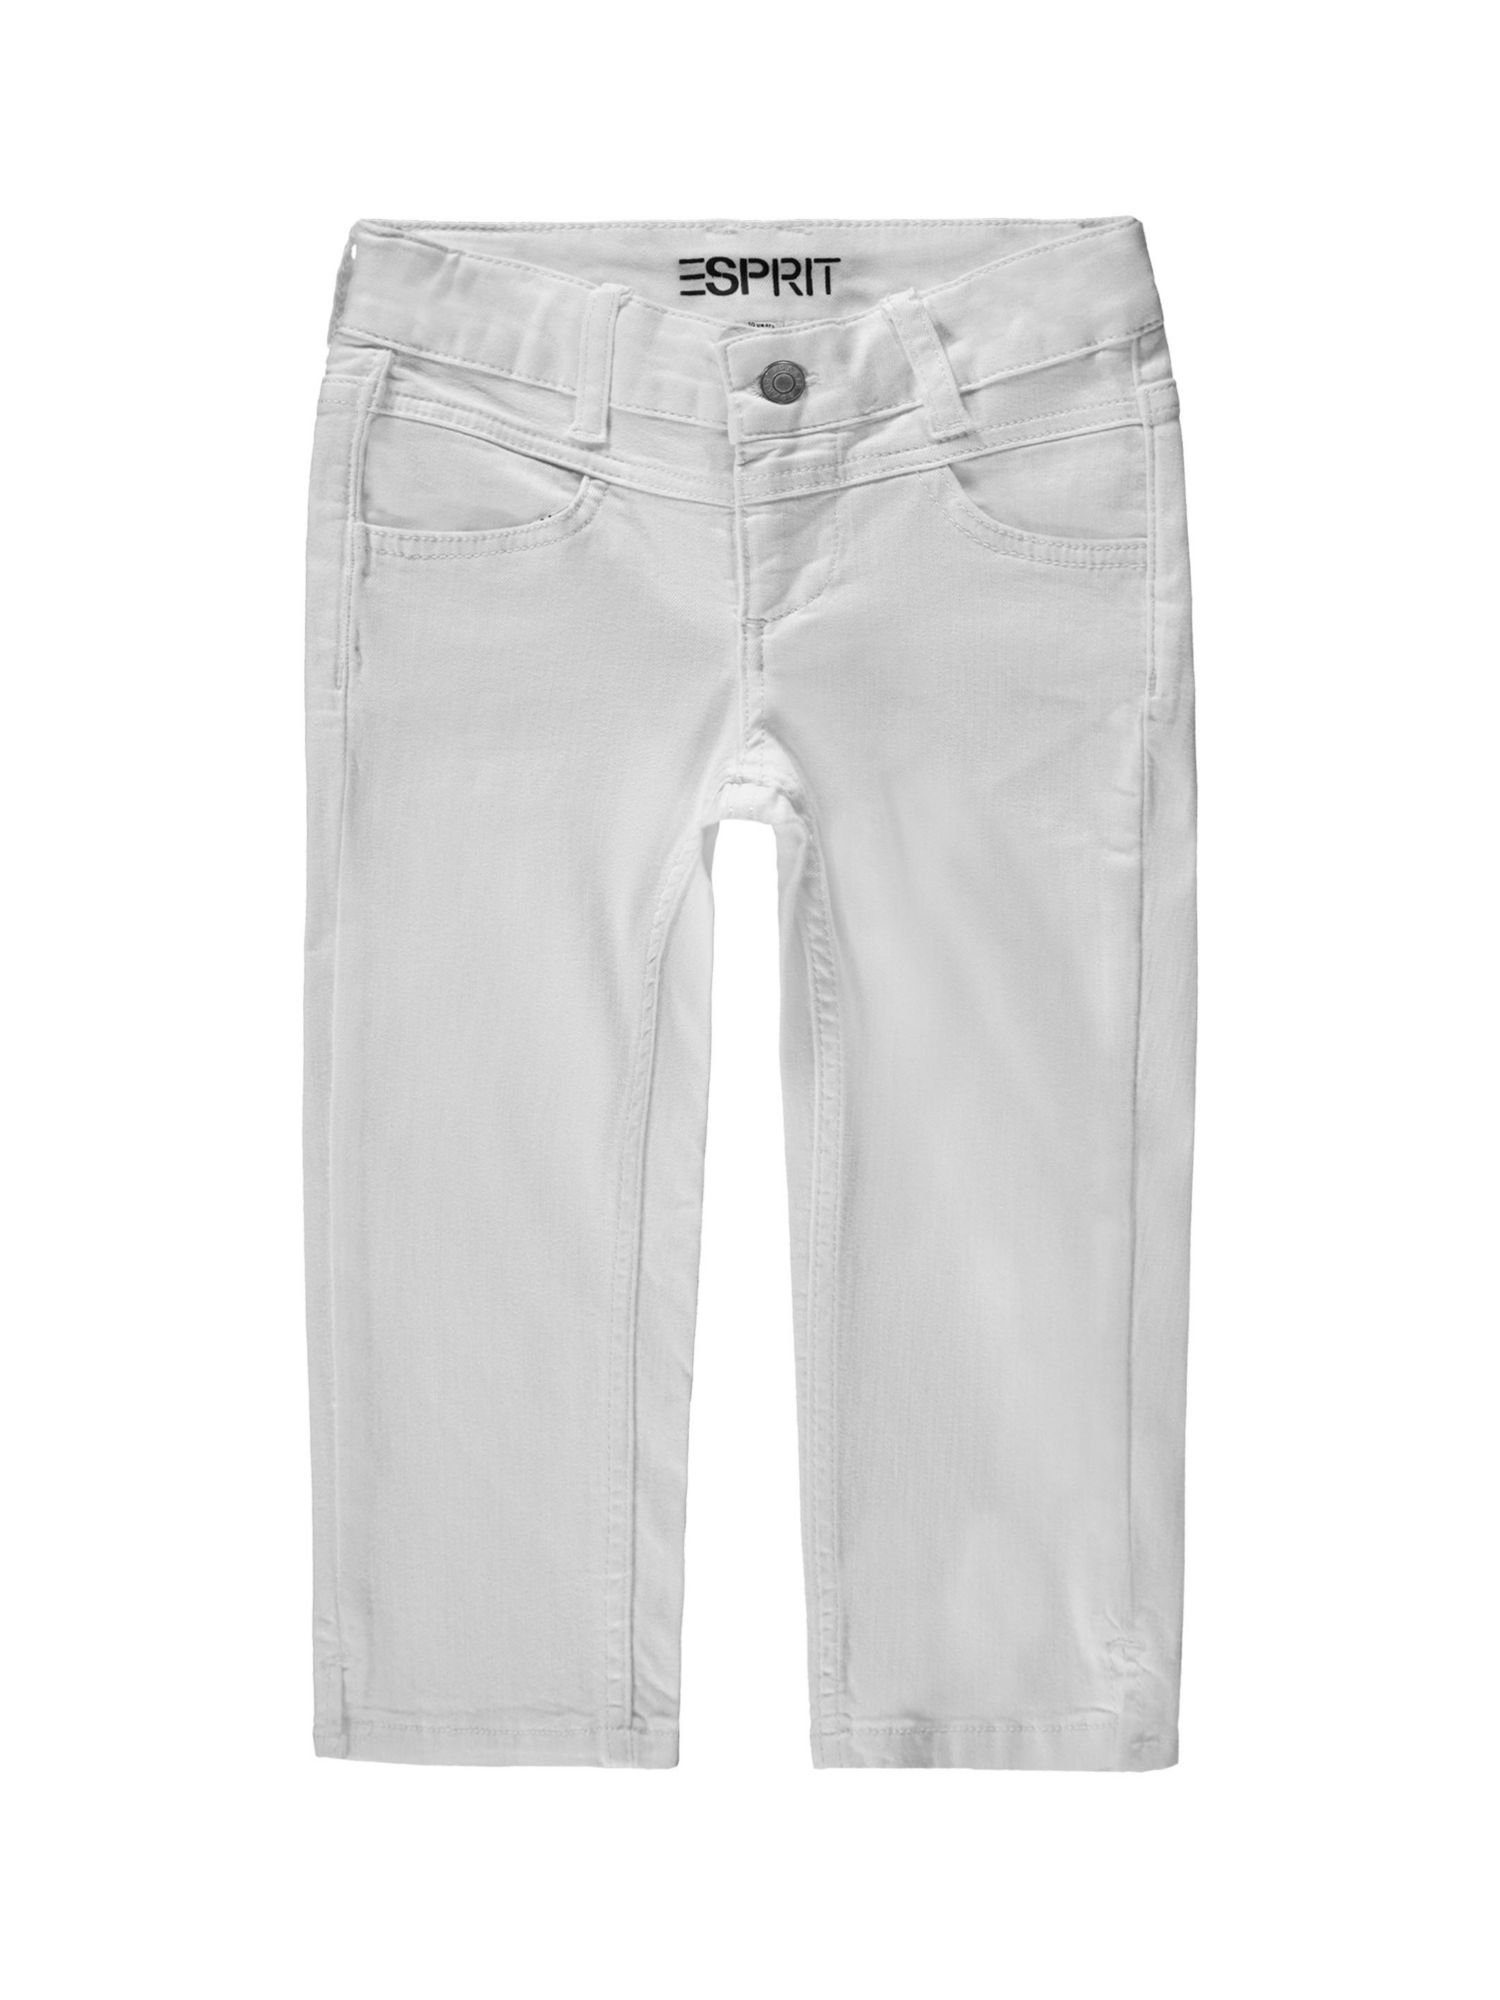 Esprit Jeansshorts Recycelt: Capri-Jeans mit WHITE Verstellbund